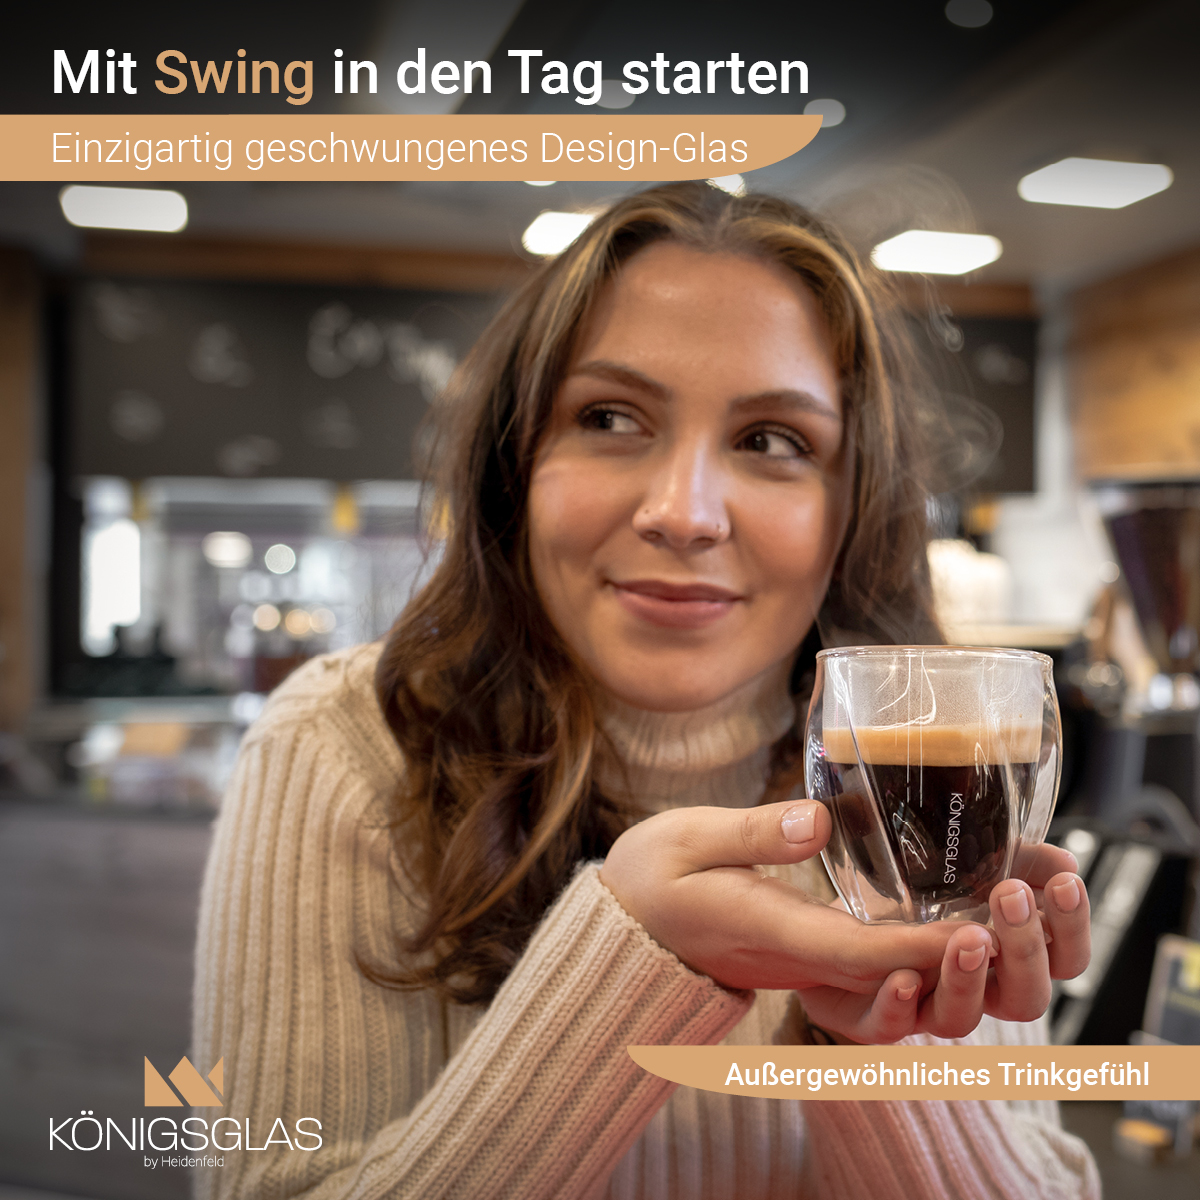 HEIDENFELD Königsglas Swing 2x 250 ml Kaffeegläser